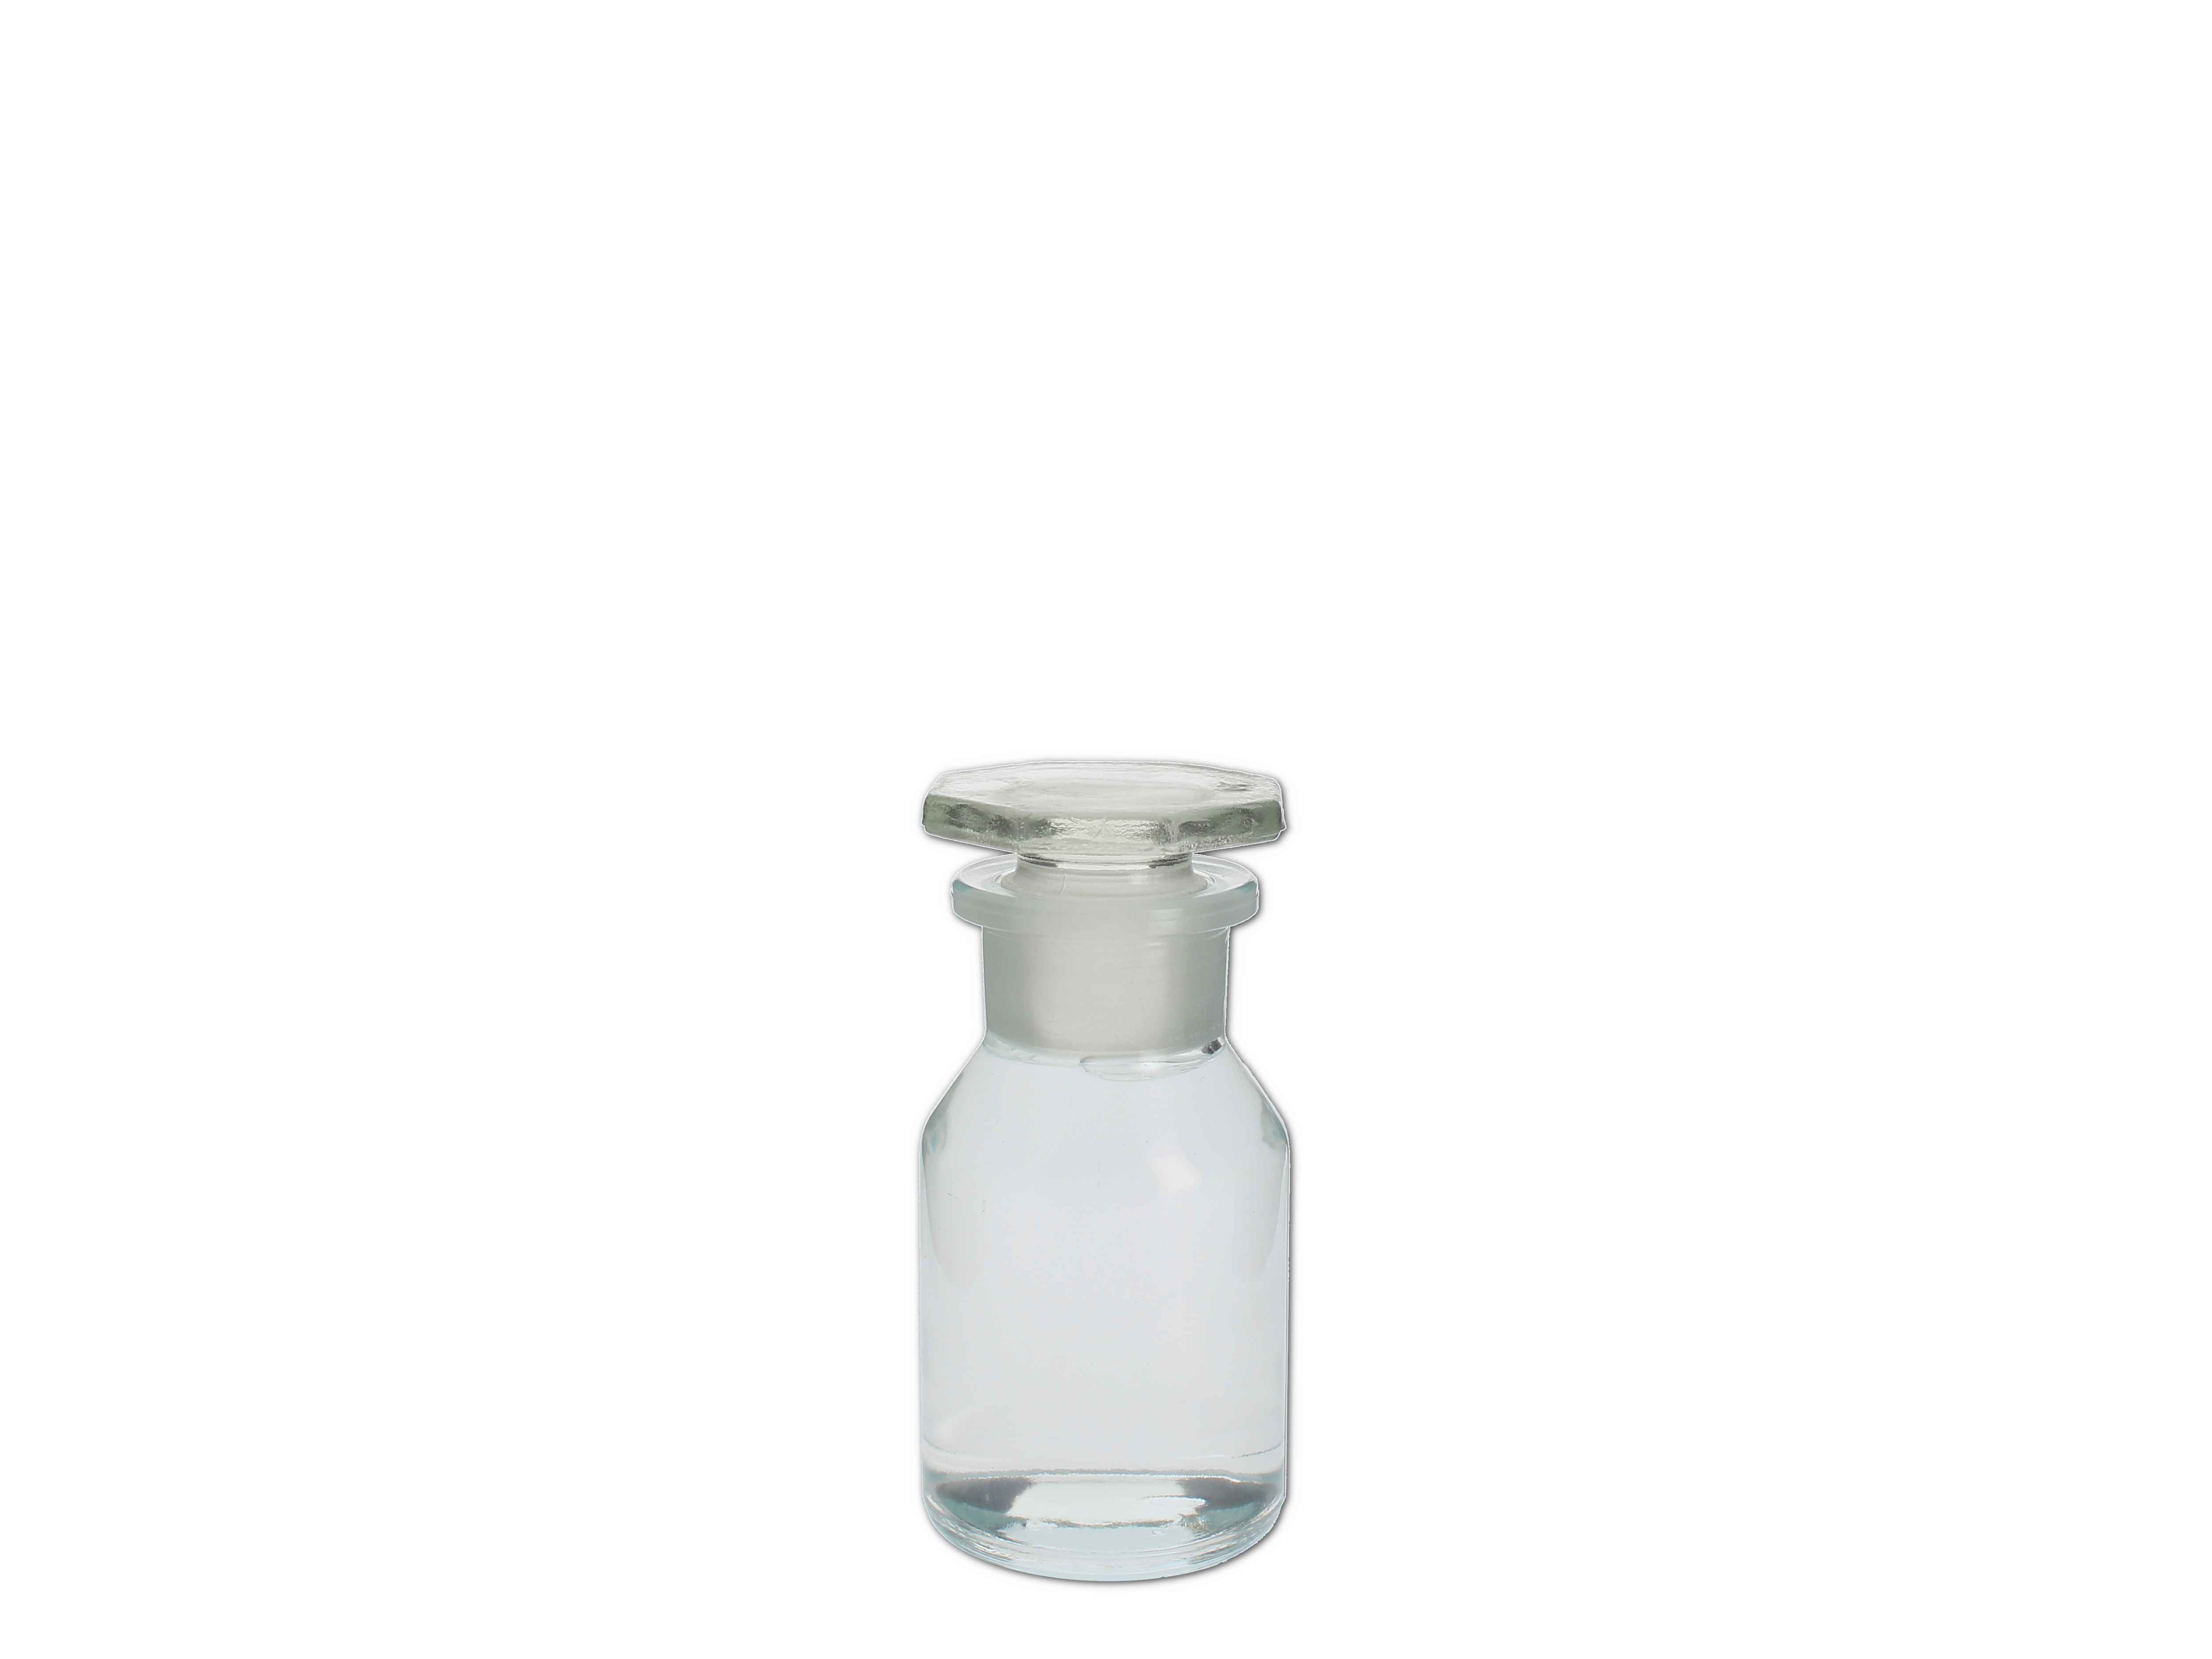    Pulverglas weiß mit Glasstopfen, rund - 100 ML